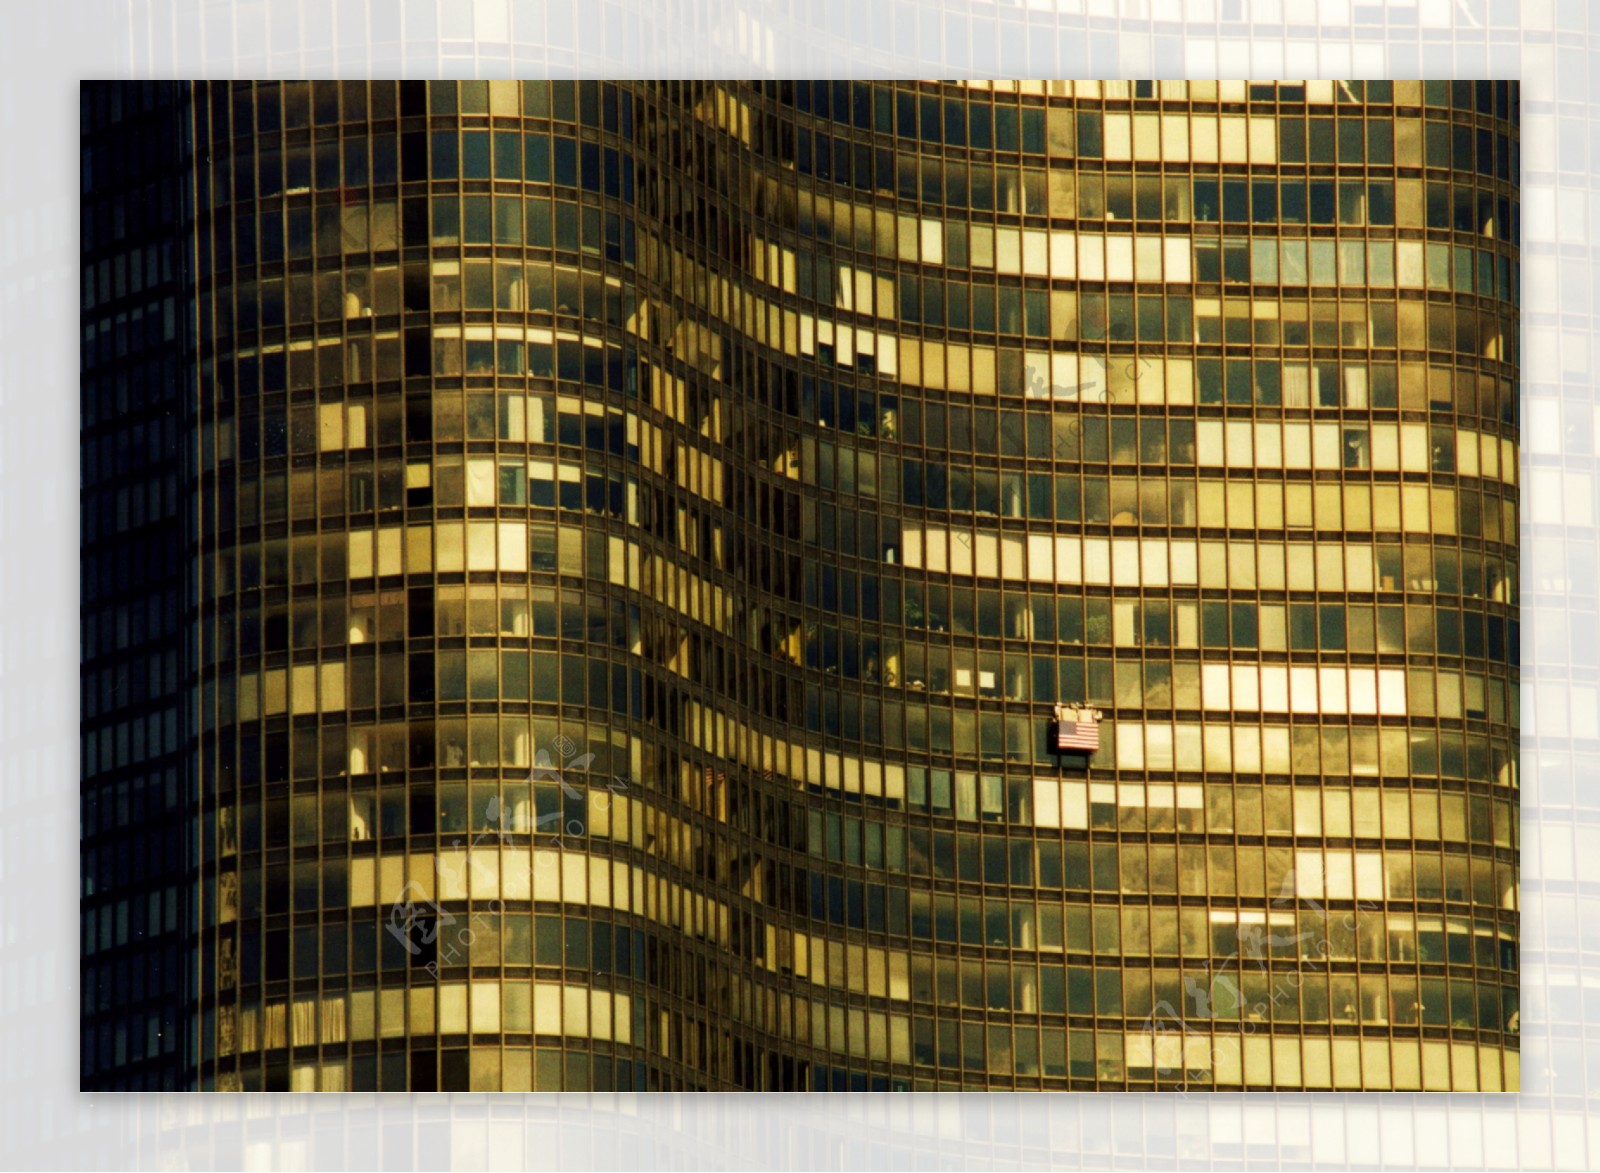 高楼大厦金色玻璃图片